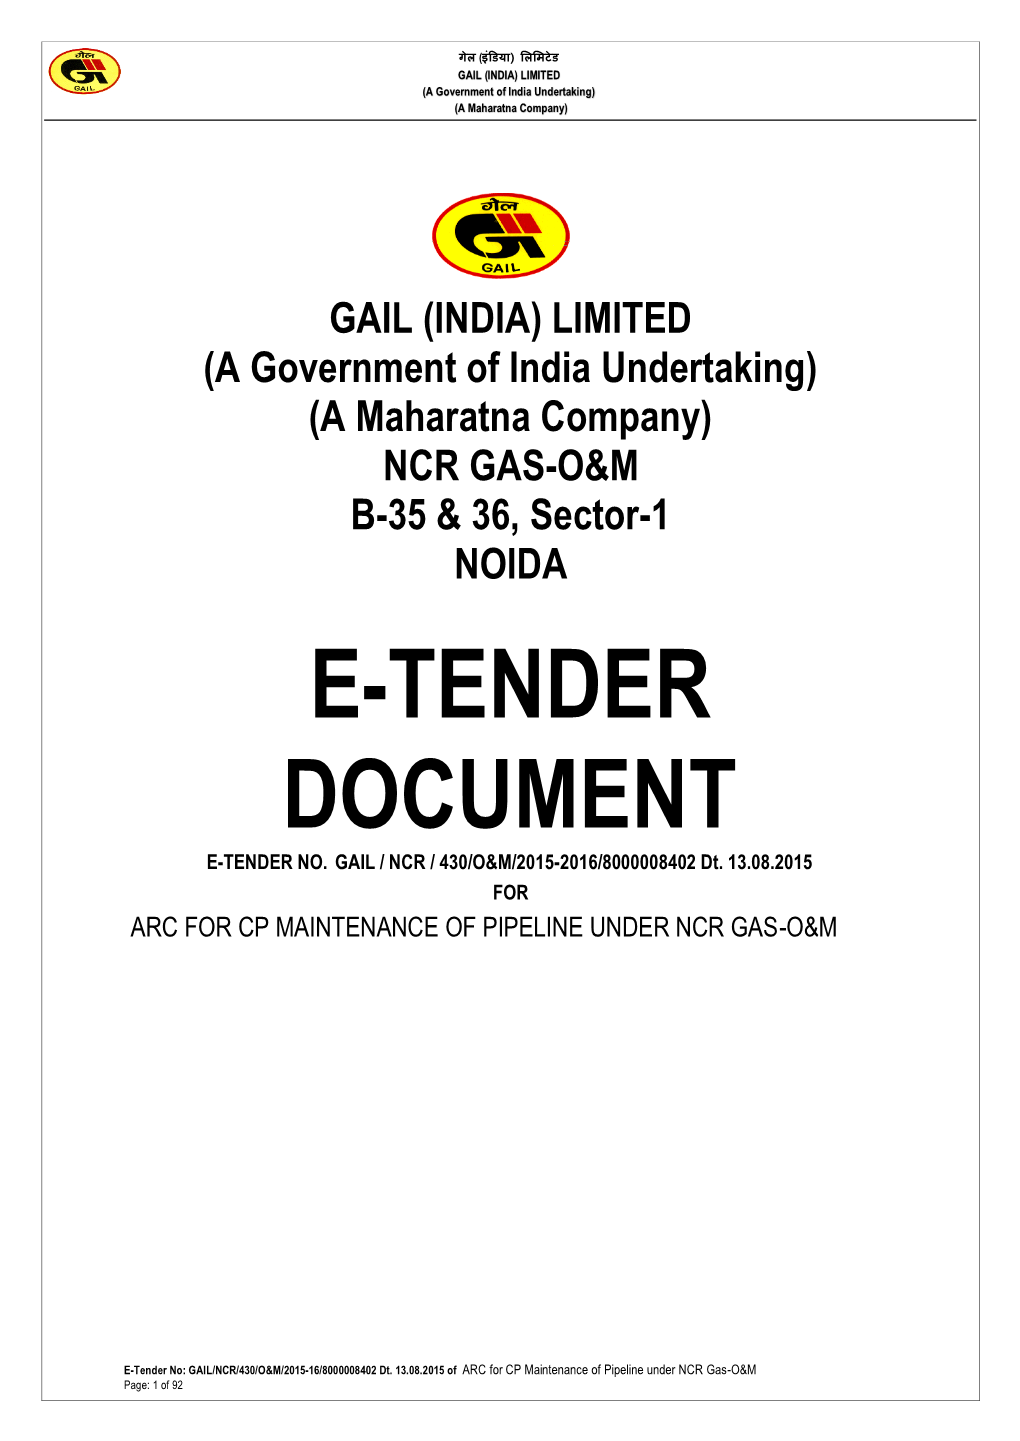 E-Tender Document E-Tender No